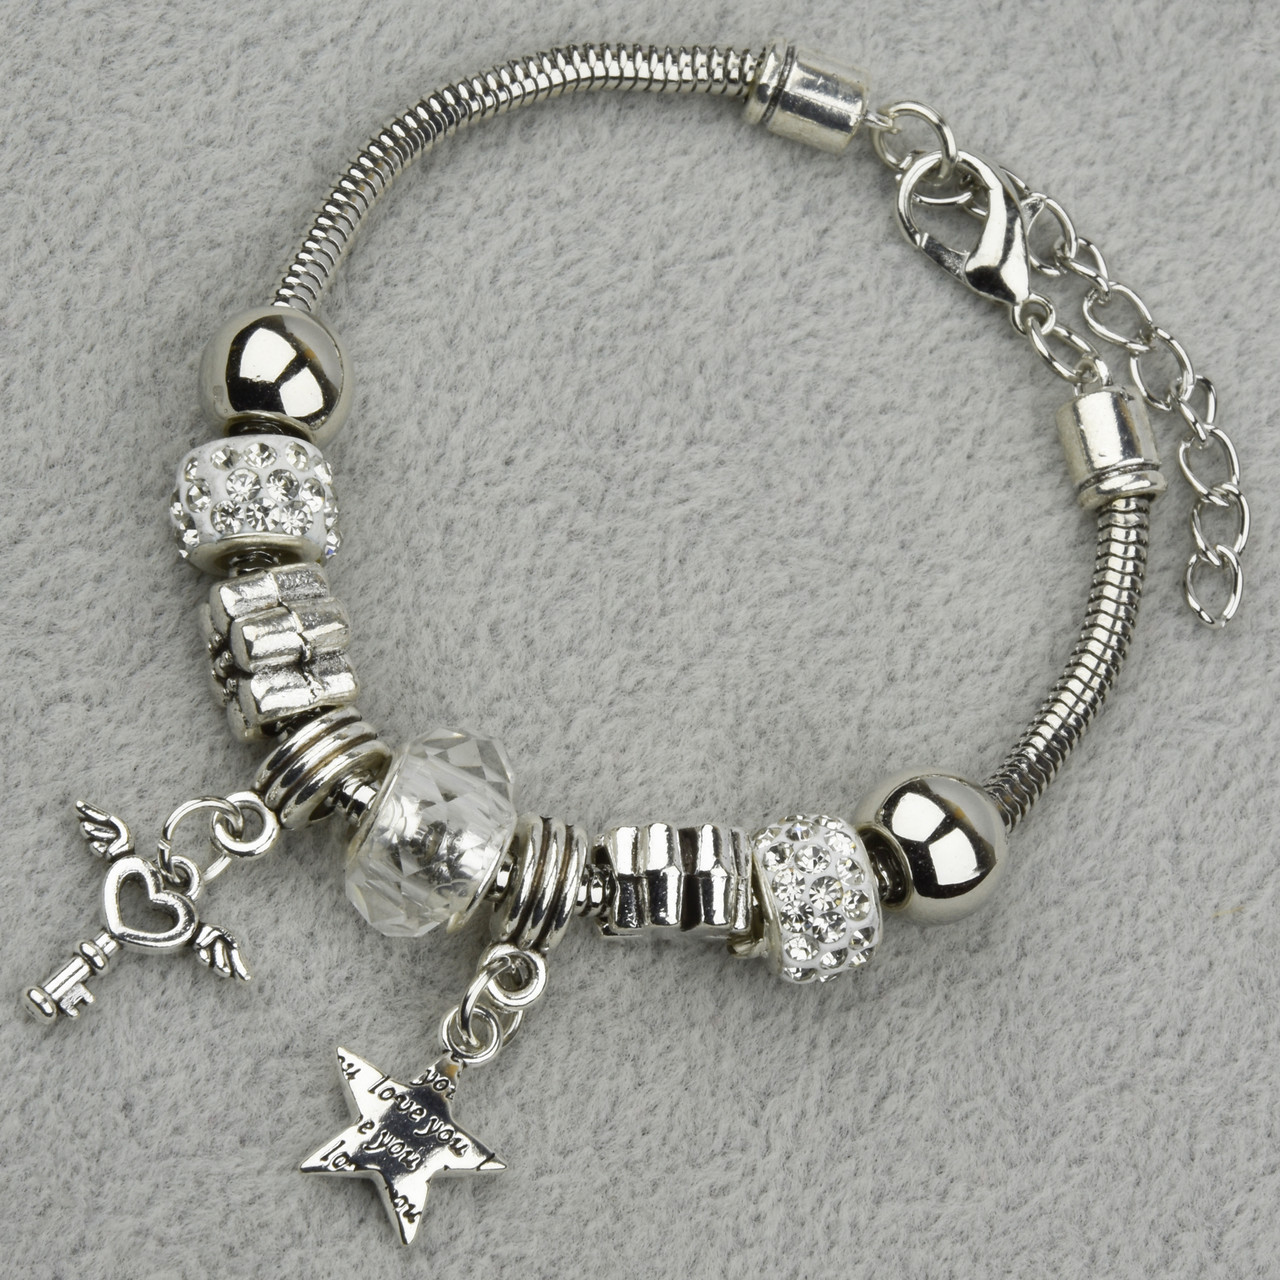 Pandora браслет серебристого цвета с ключиком с шармами в стразах 9 штук длина браслета 22 см ширина 3 мм